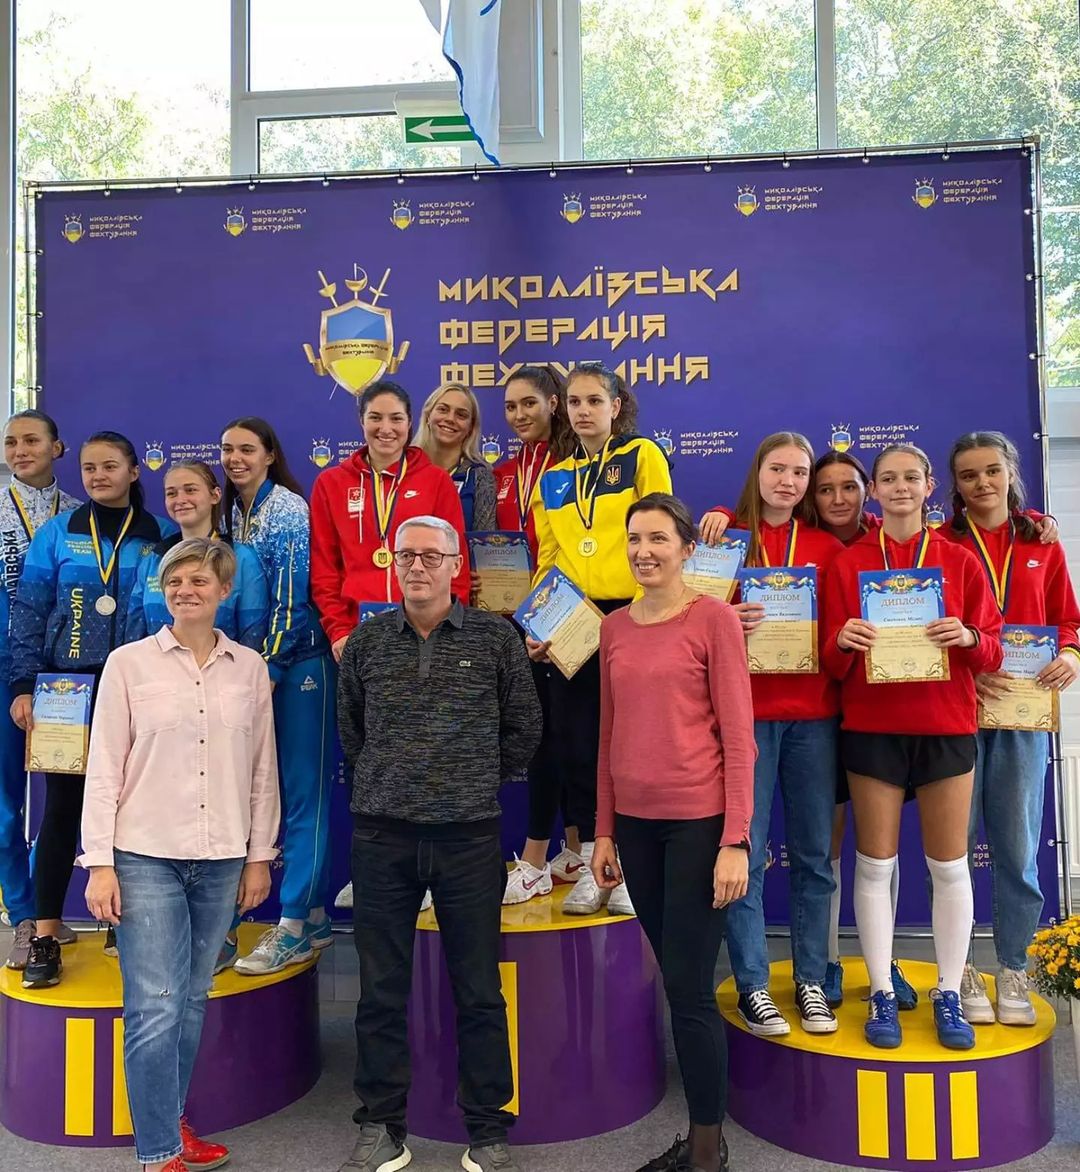 ЮЧУ Миколаїв 2021: Катерина Буденко перемагає особисто і разом з командою